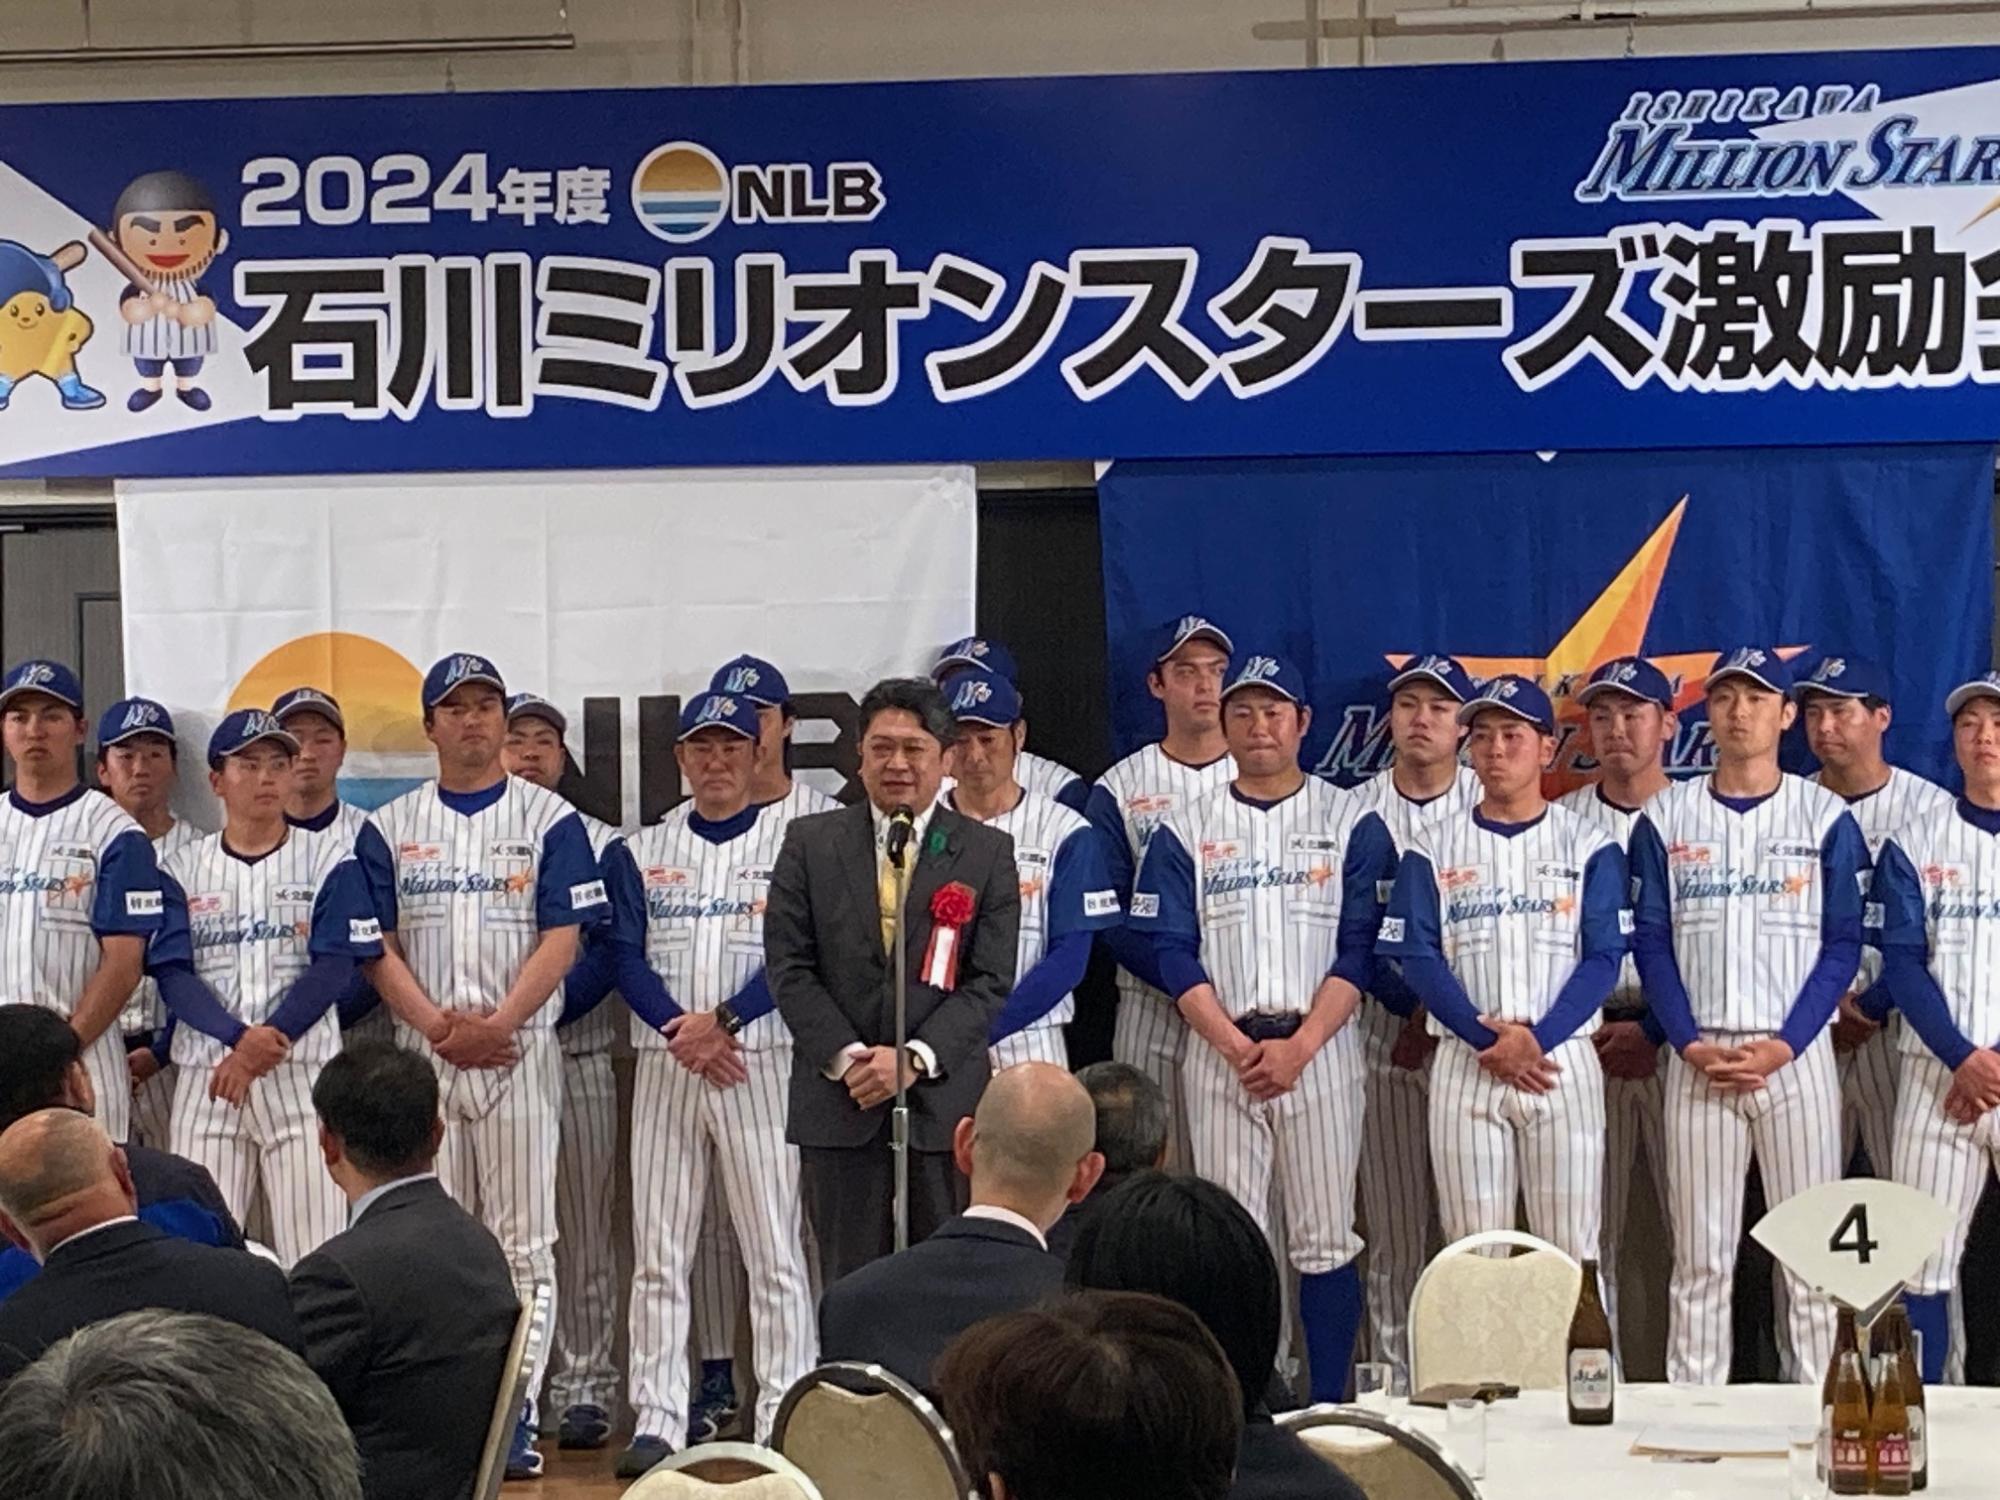 石川ミリオンスターズのシーズン開幕選手激励会であいさつする市長